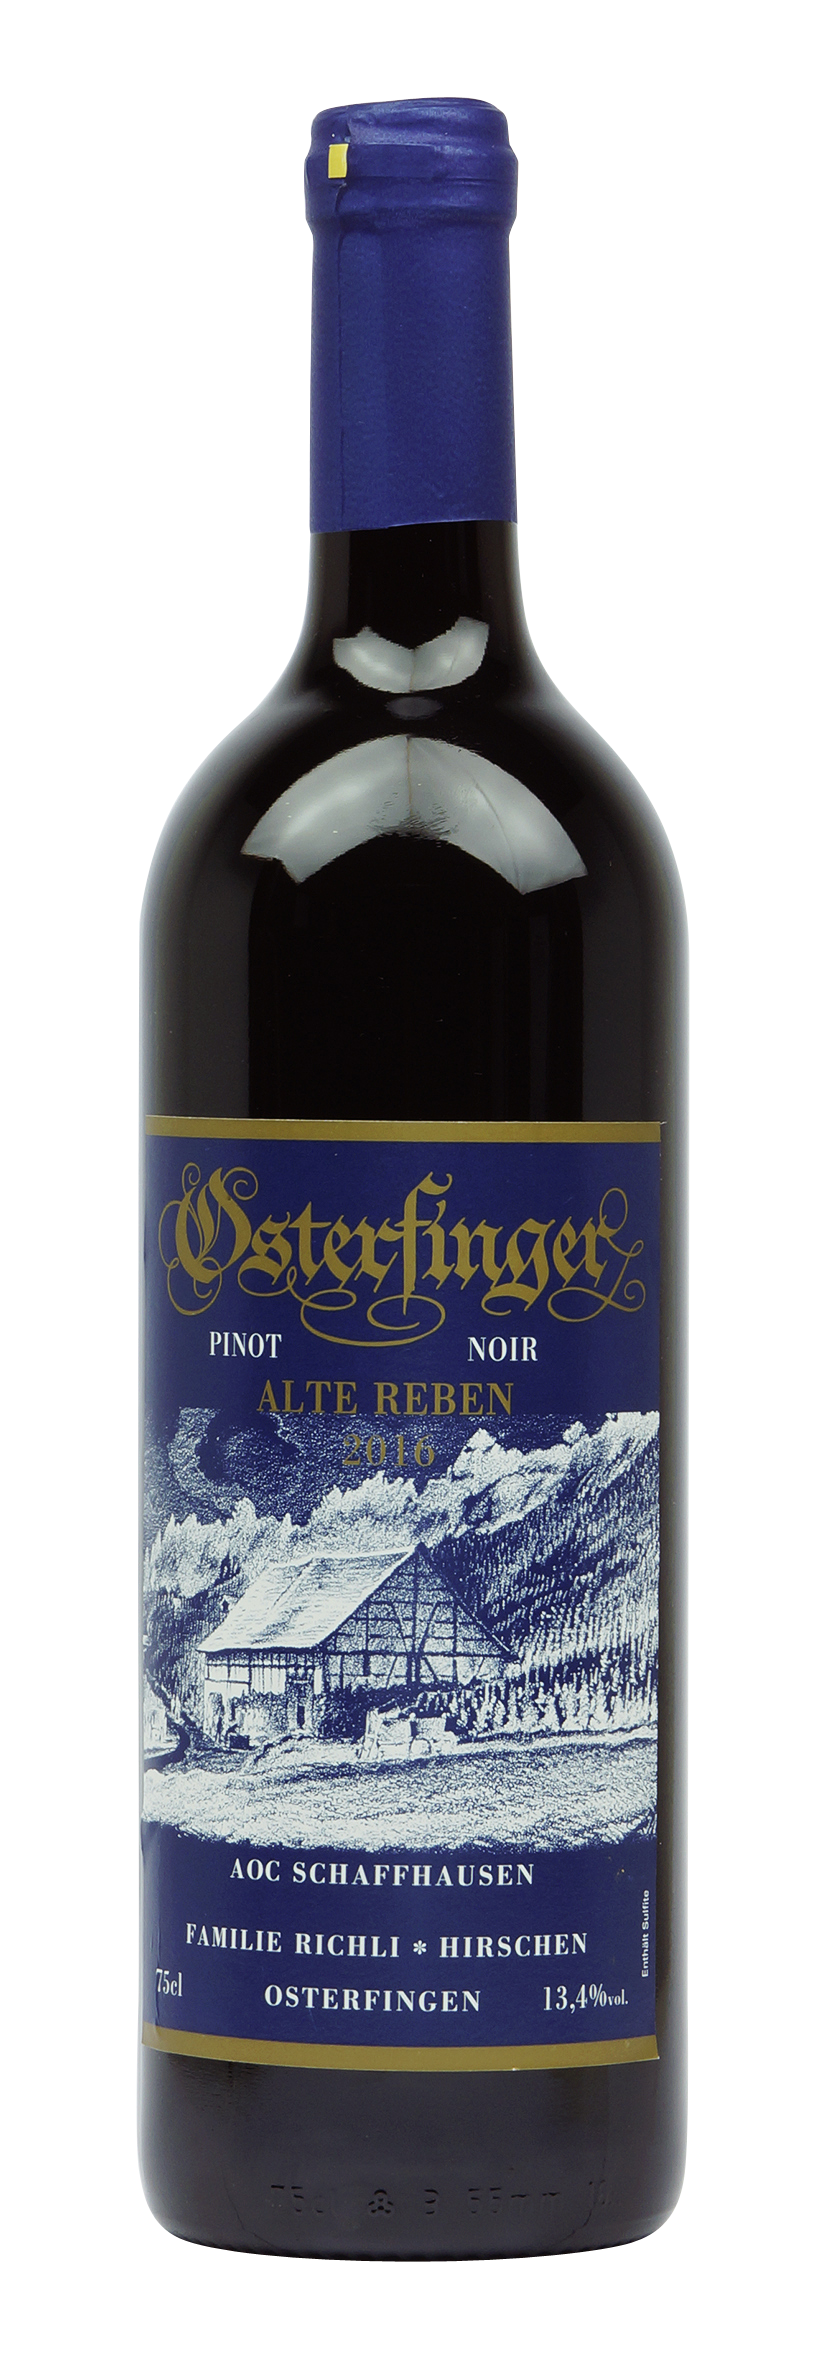 Schaffhausen AOC Osterfinger Pinot Noir «Alte Reben» 2016